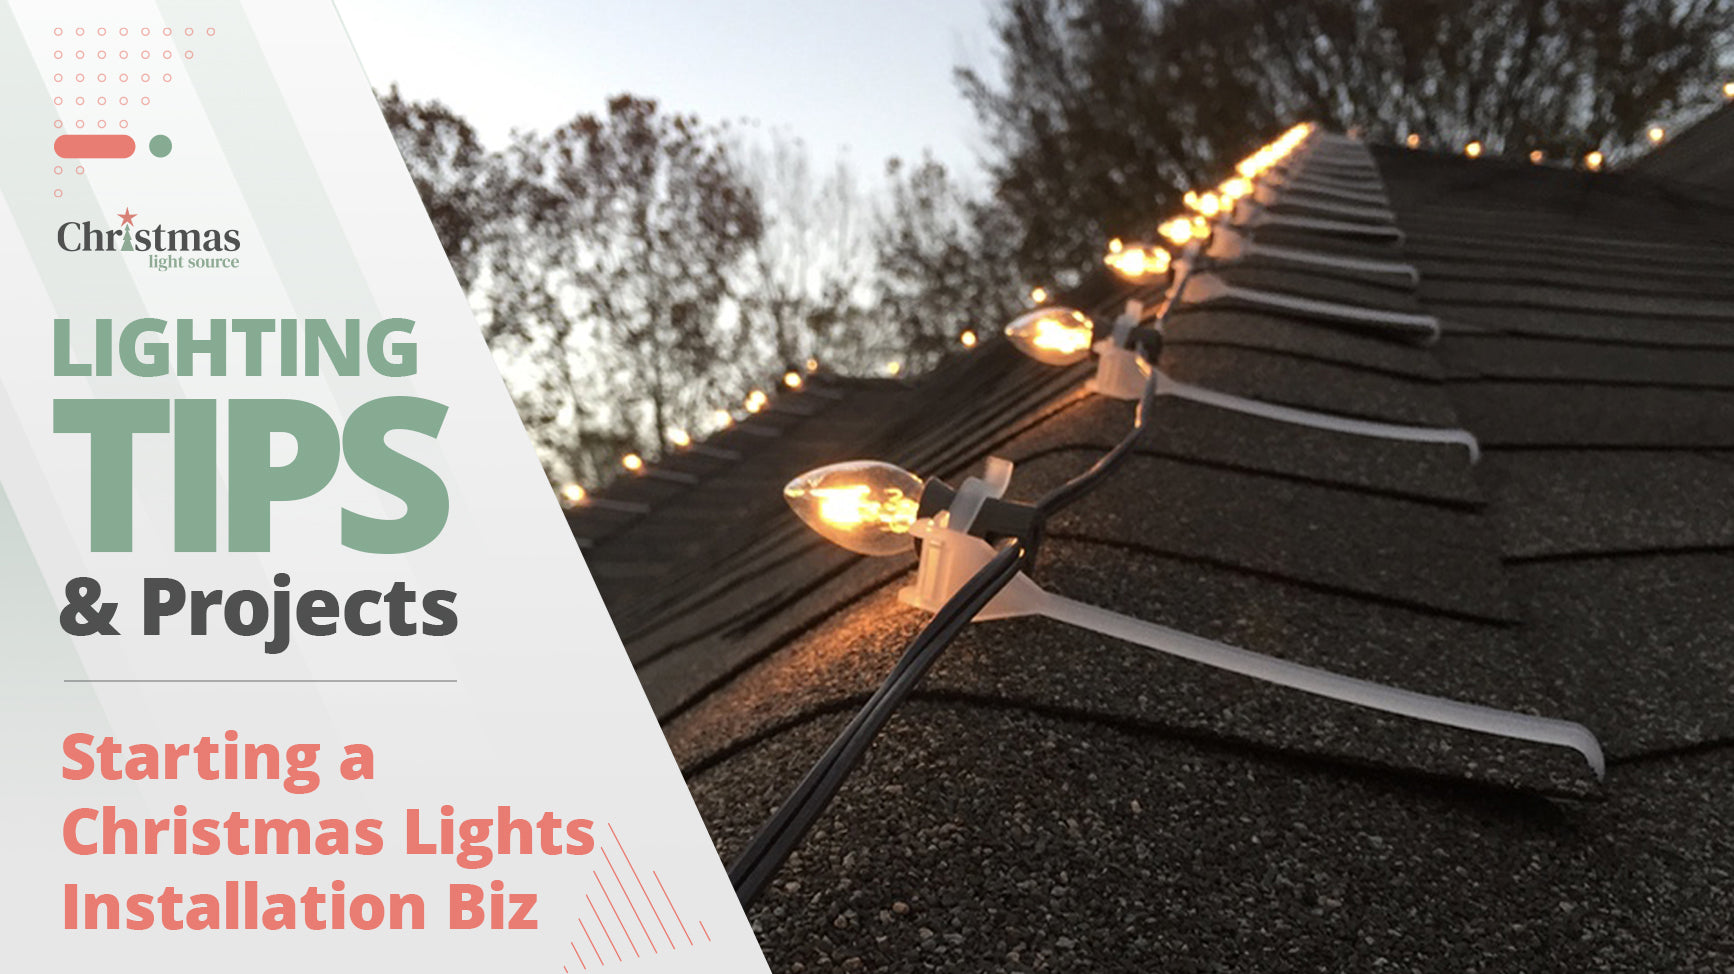 Start a Christmas Lights Installation Business